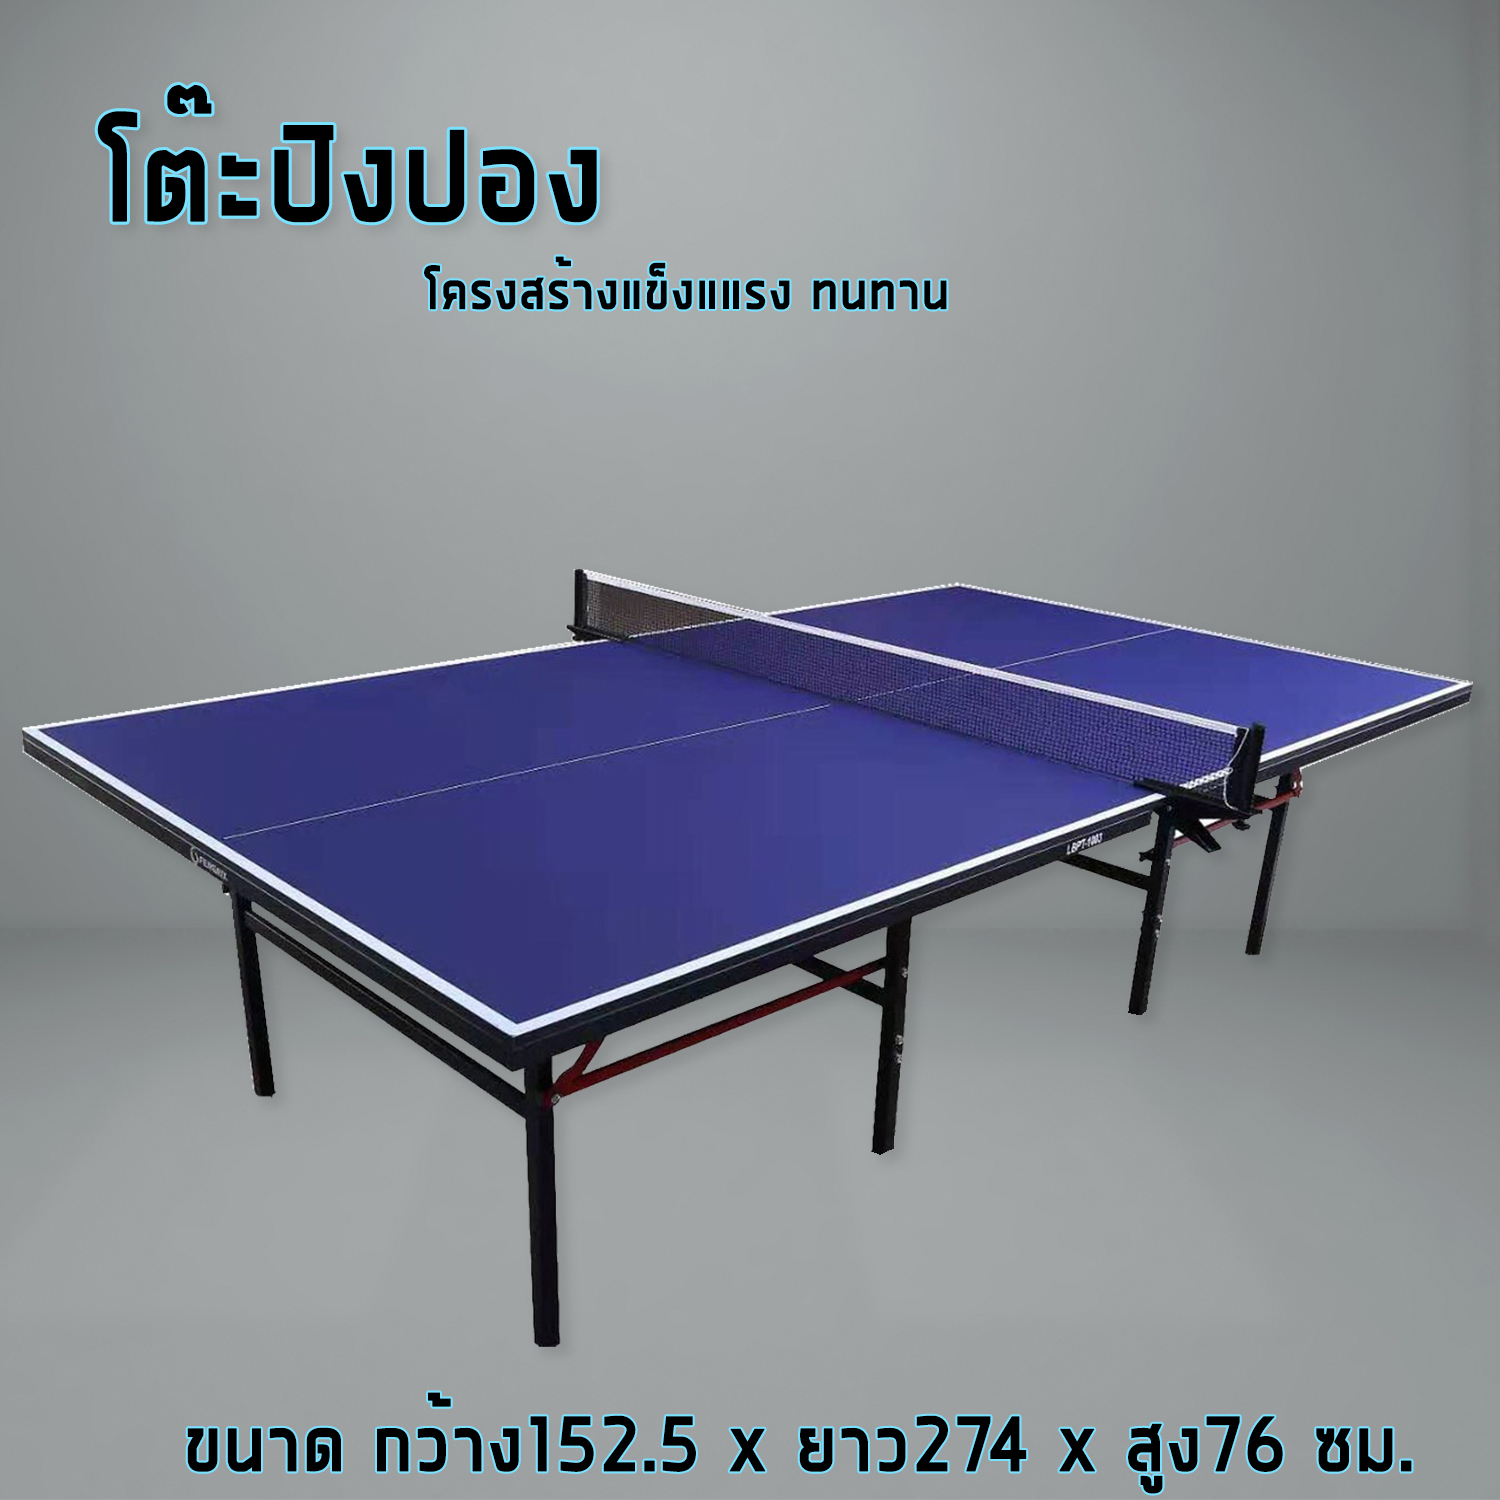 รายละเอียดเพิ่มเติมเกี่ยวกับ โต๊ะปิงปอง  โต๊ะปิงปองมาตรฐานแข่งขัน Table Tennis Table